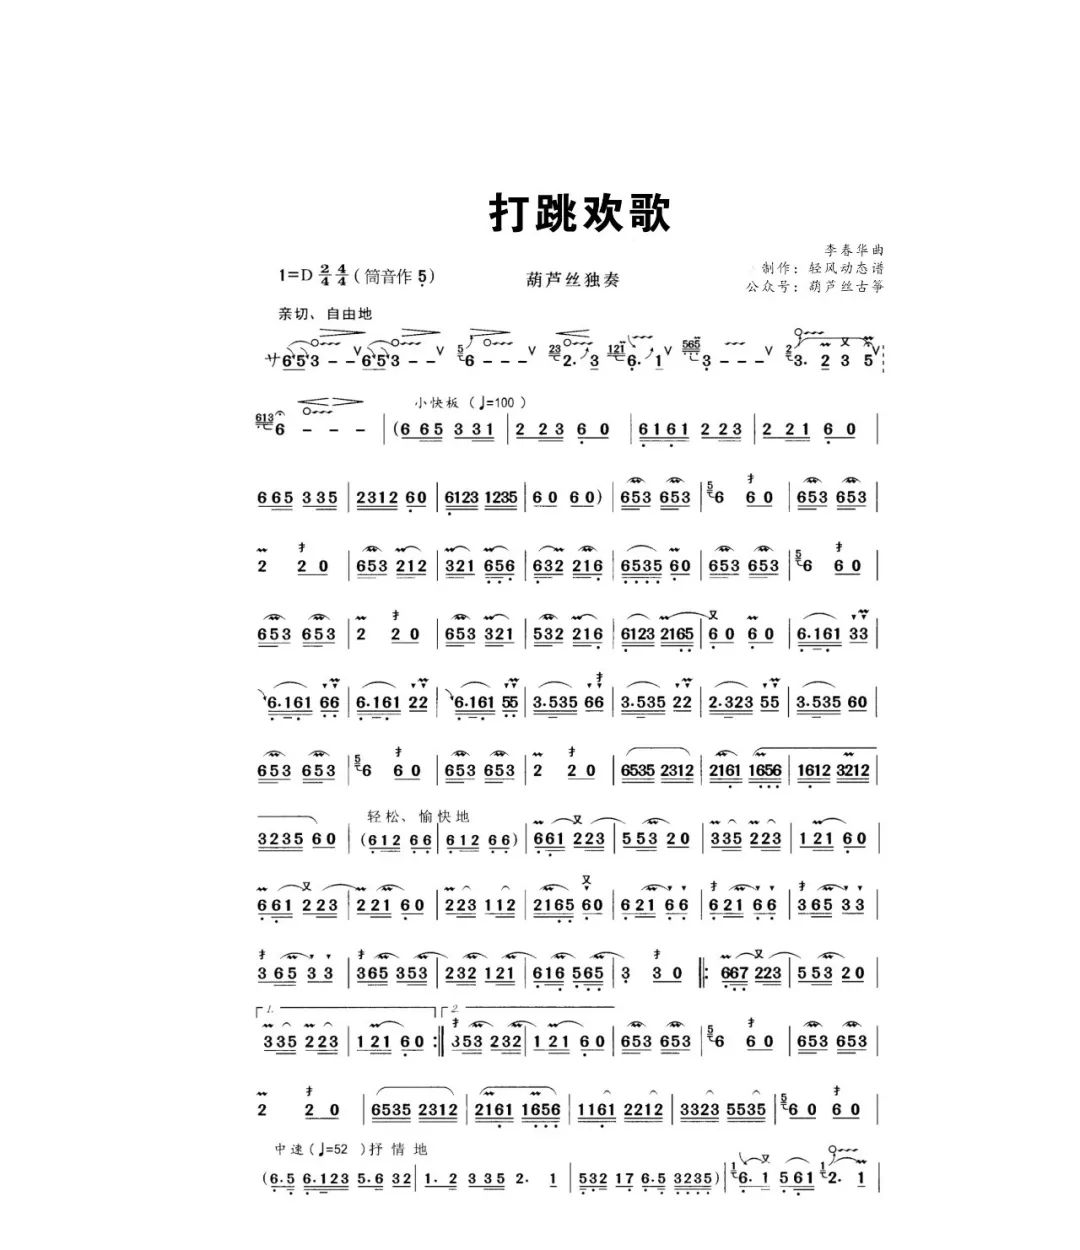 国歌葫芦丝曲谱(3)